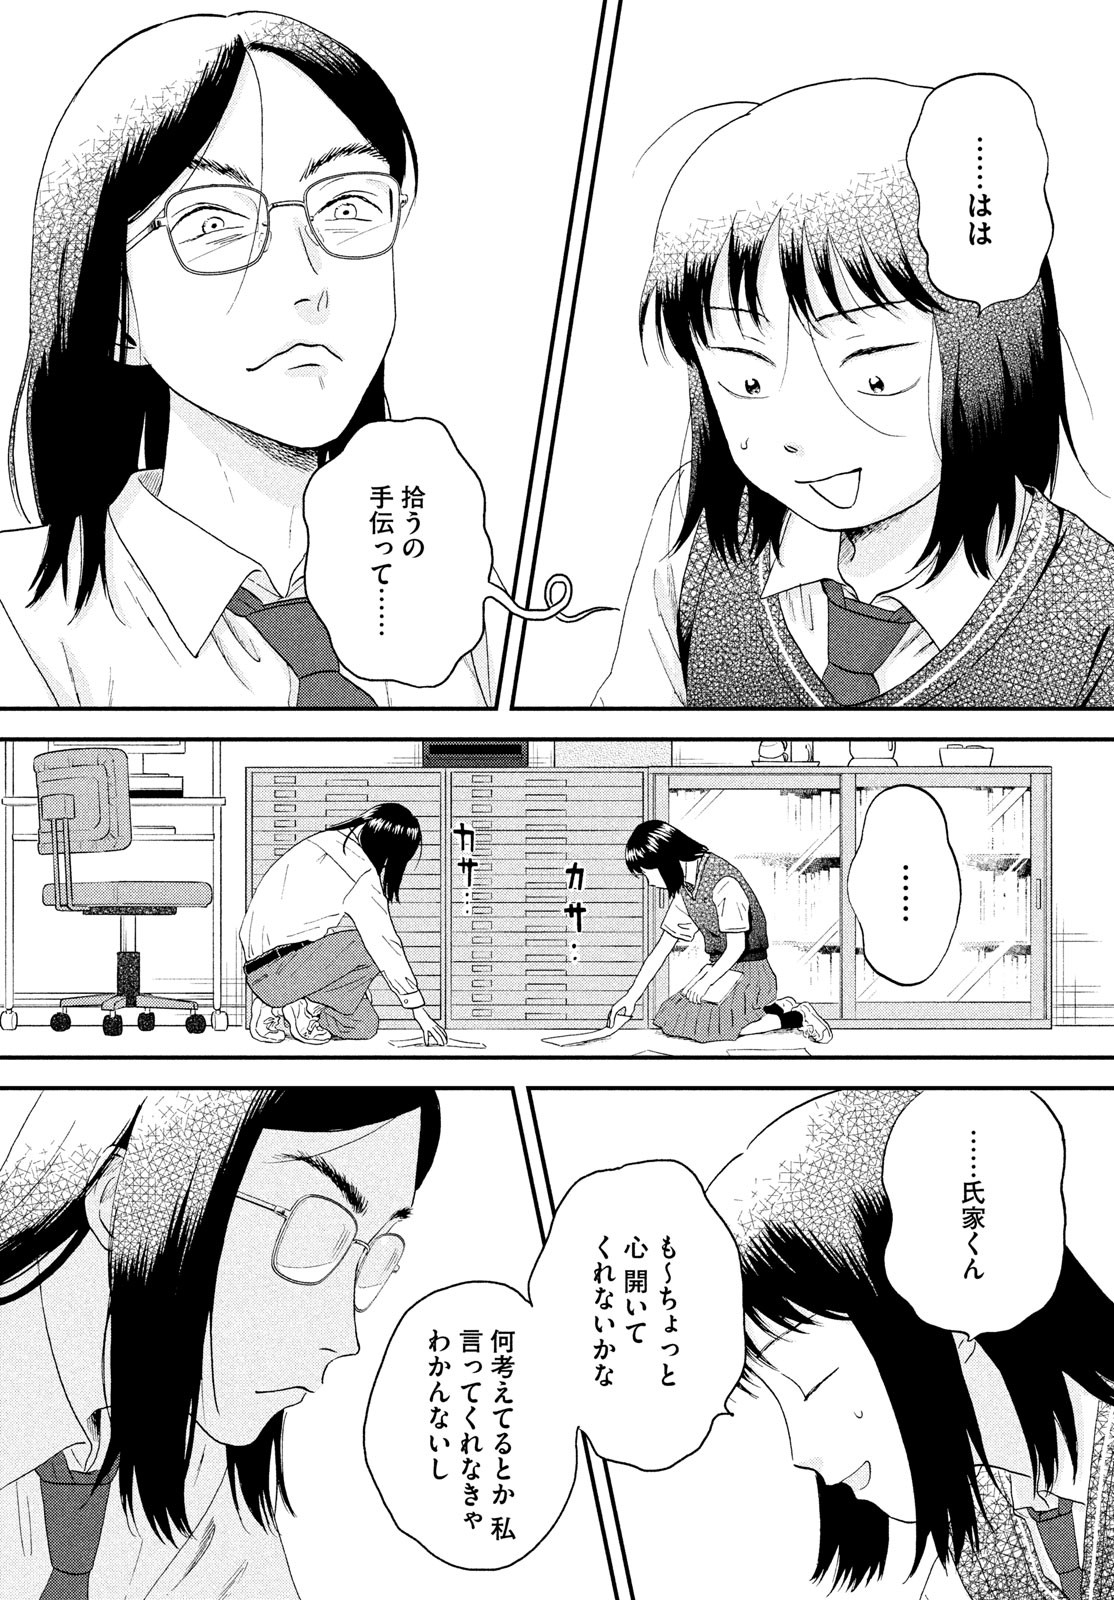 Daru on X: #Manga Skip to Loafer #Anime  / X